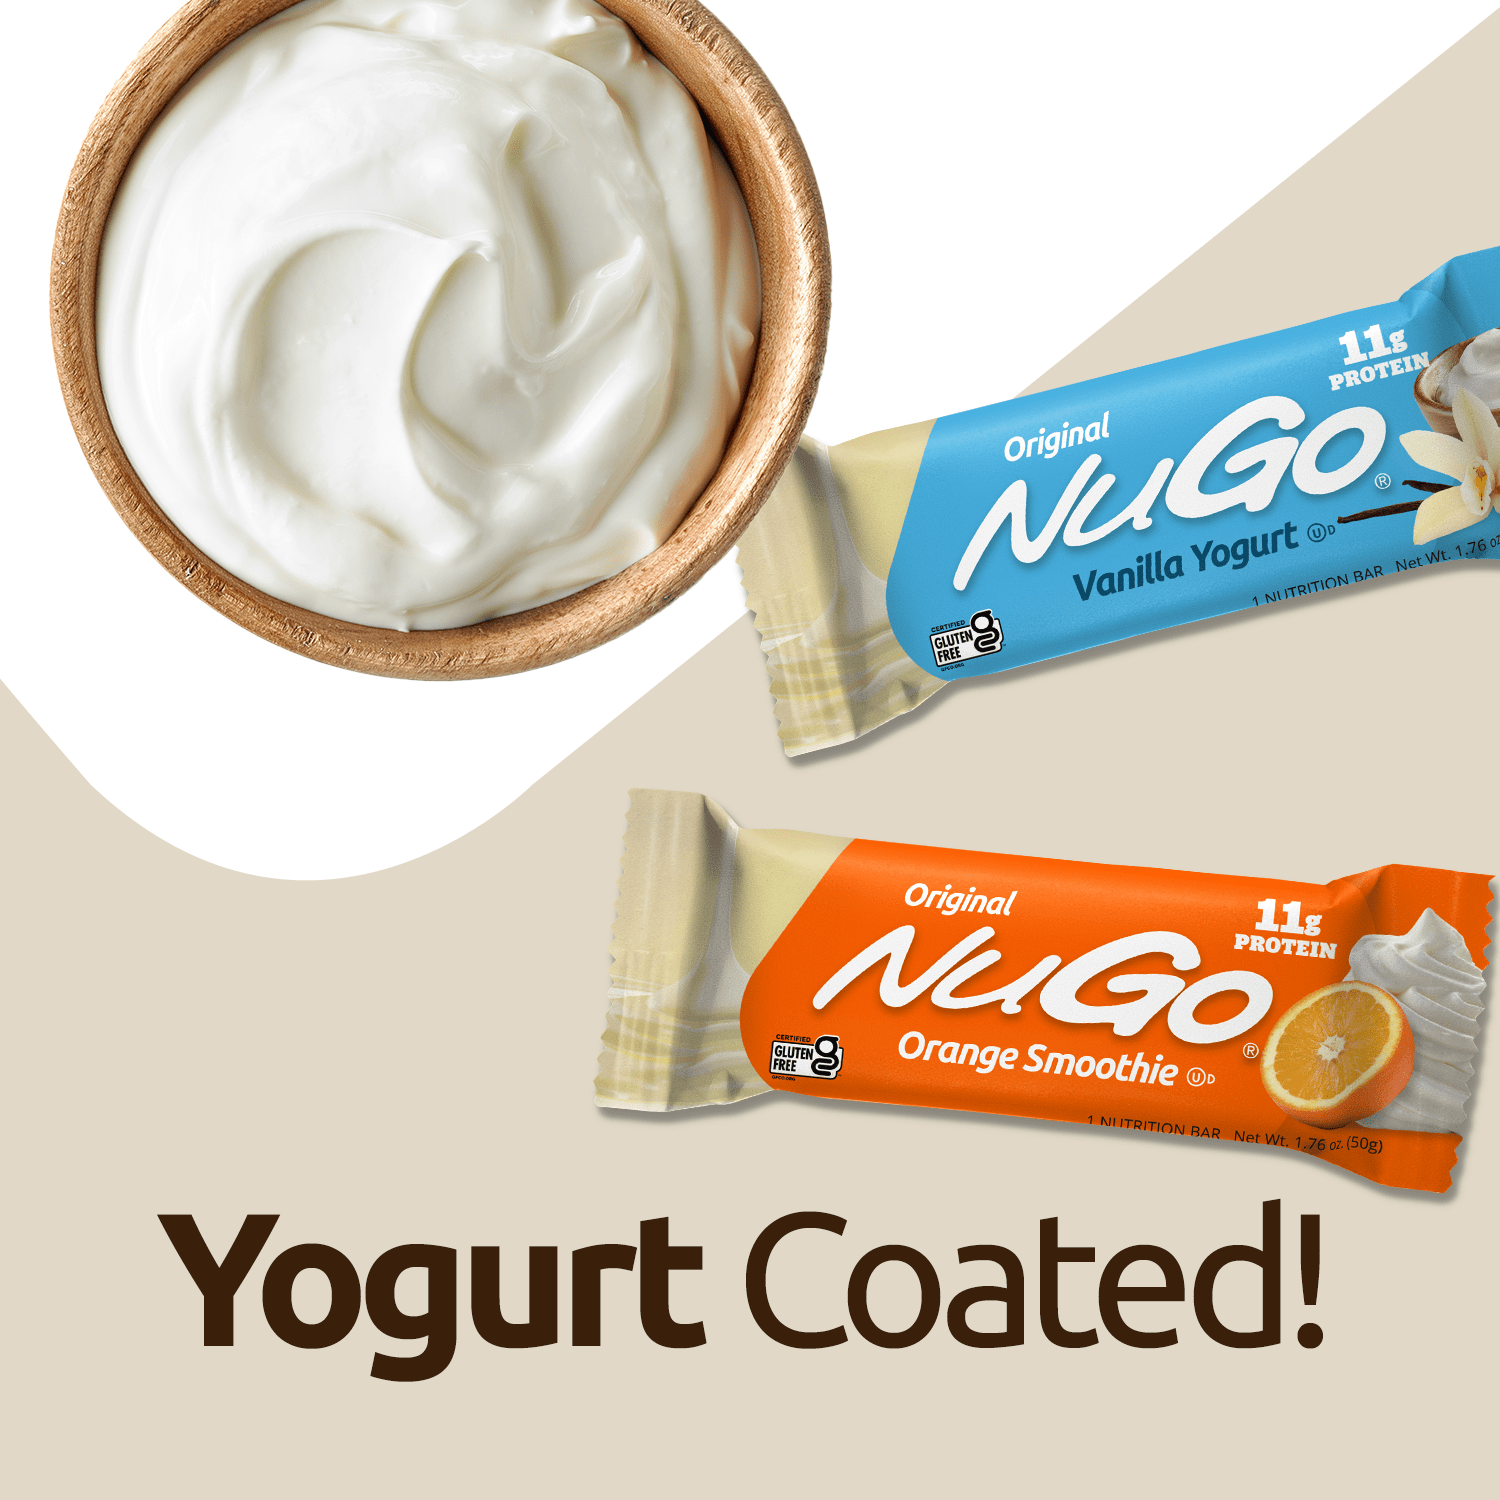 Yogurt Coated Text Image